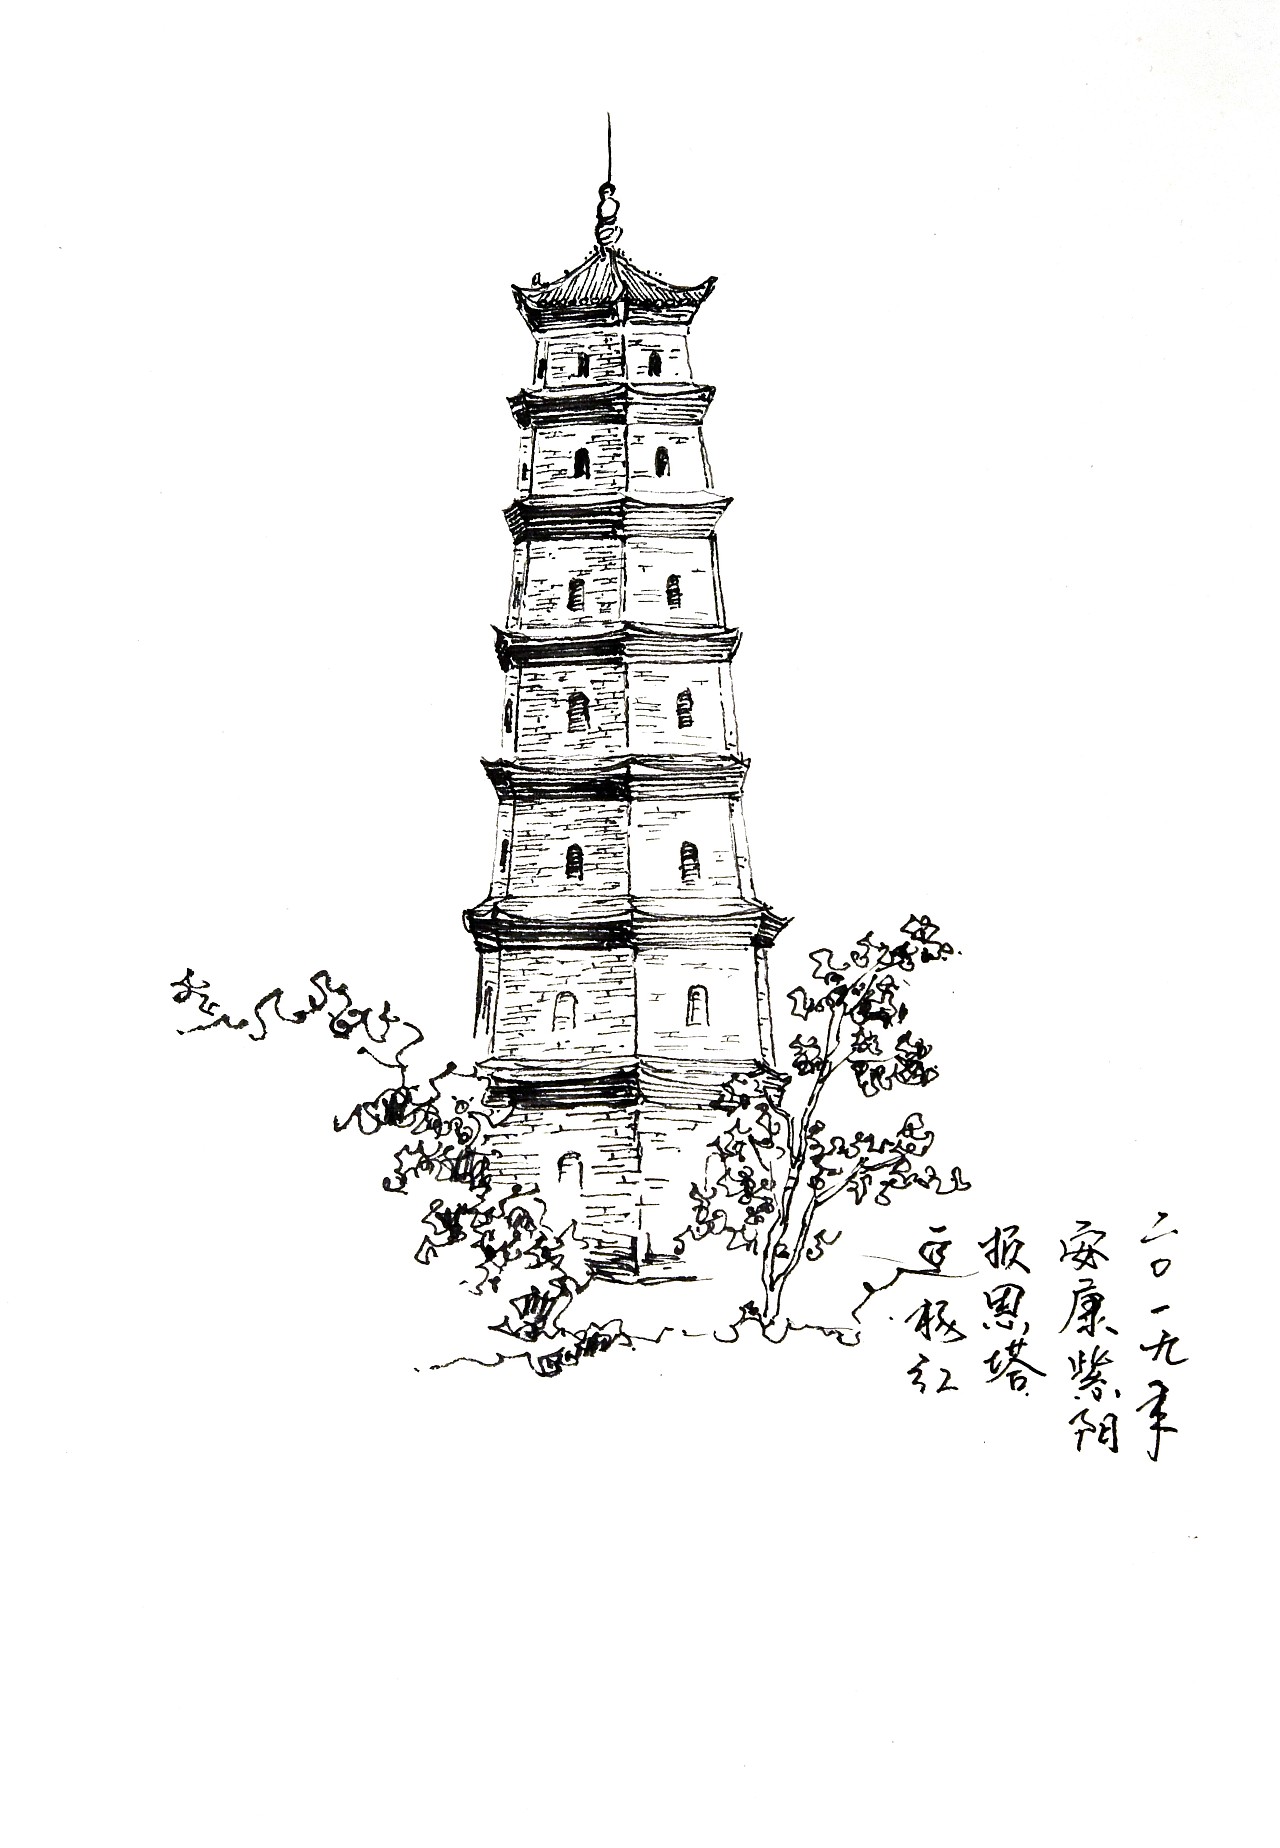 中国宝塔矢量图 向量例证. 插画 包括有 项目, 图画, 寺庙, 聚会所, 中国, 屋顶, 例证, 对象 - 162727993